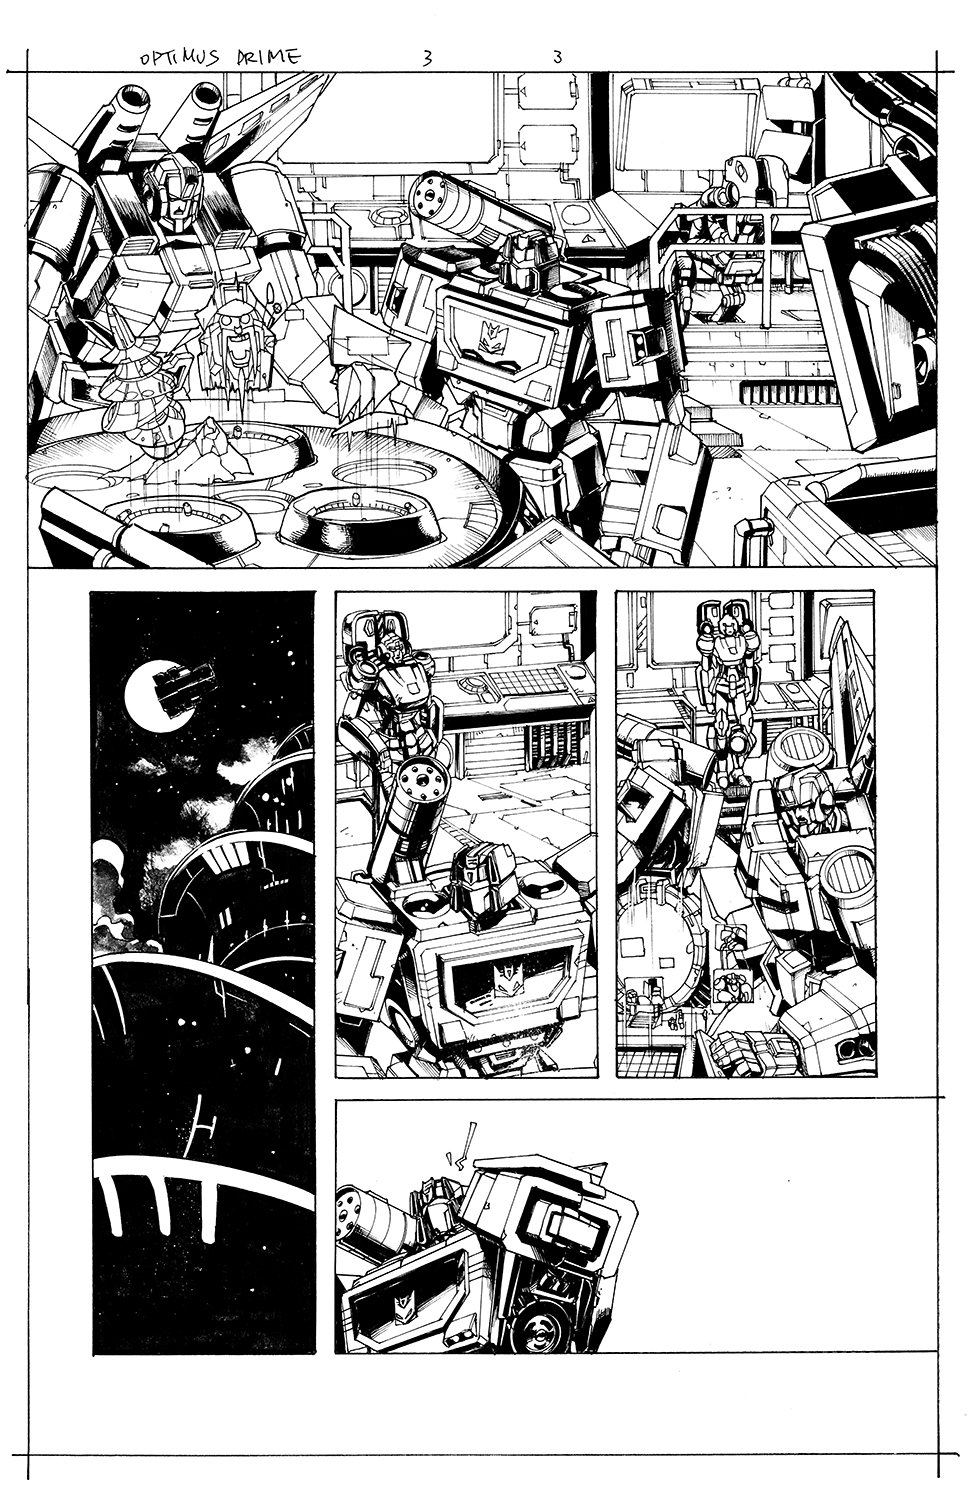 Optimus Prime #3 Page 03